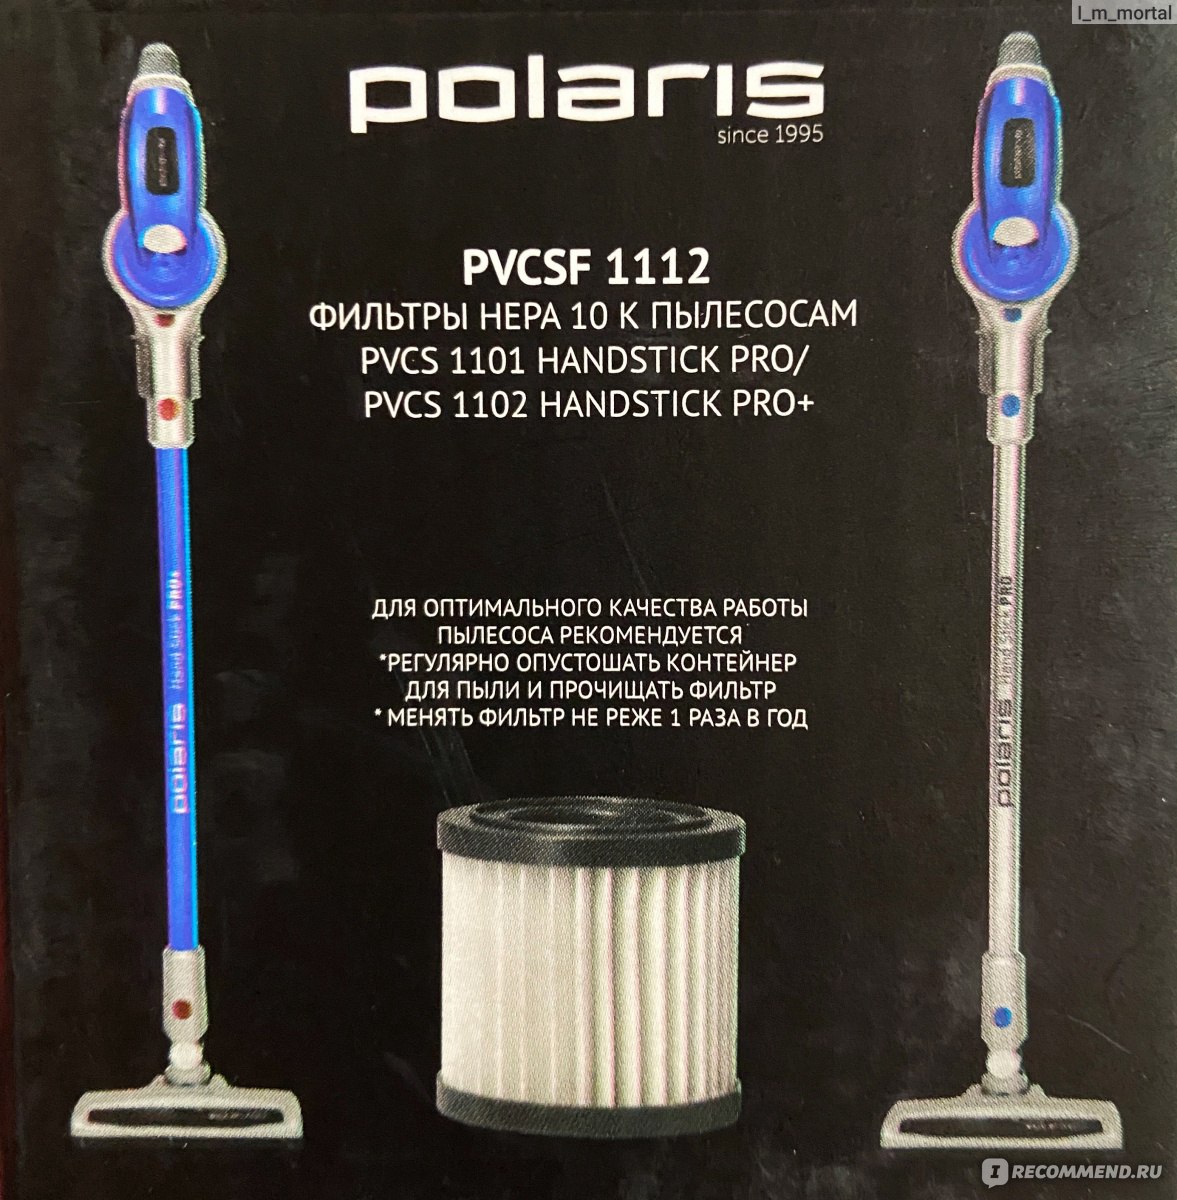 Фильтр для пылесоса Polaris PVCSF 1112